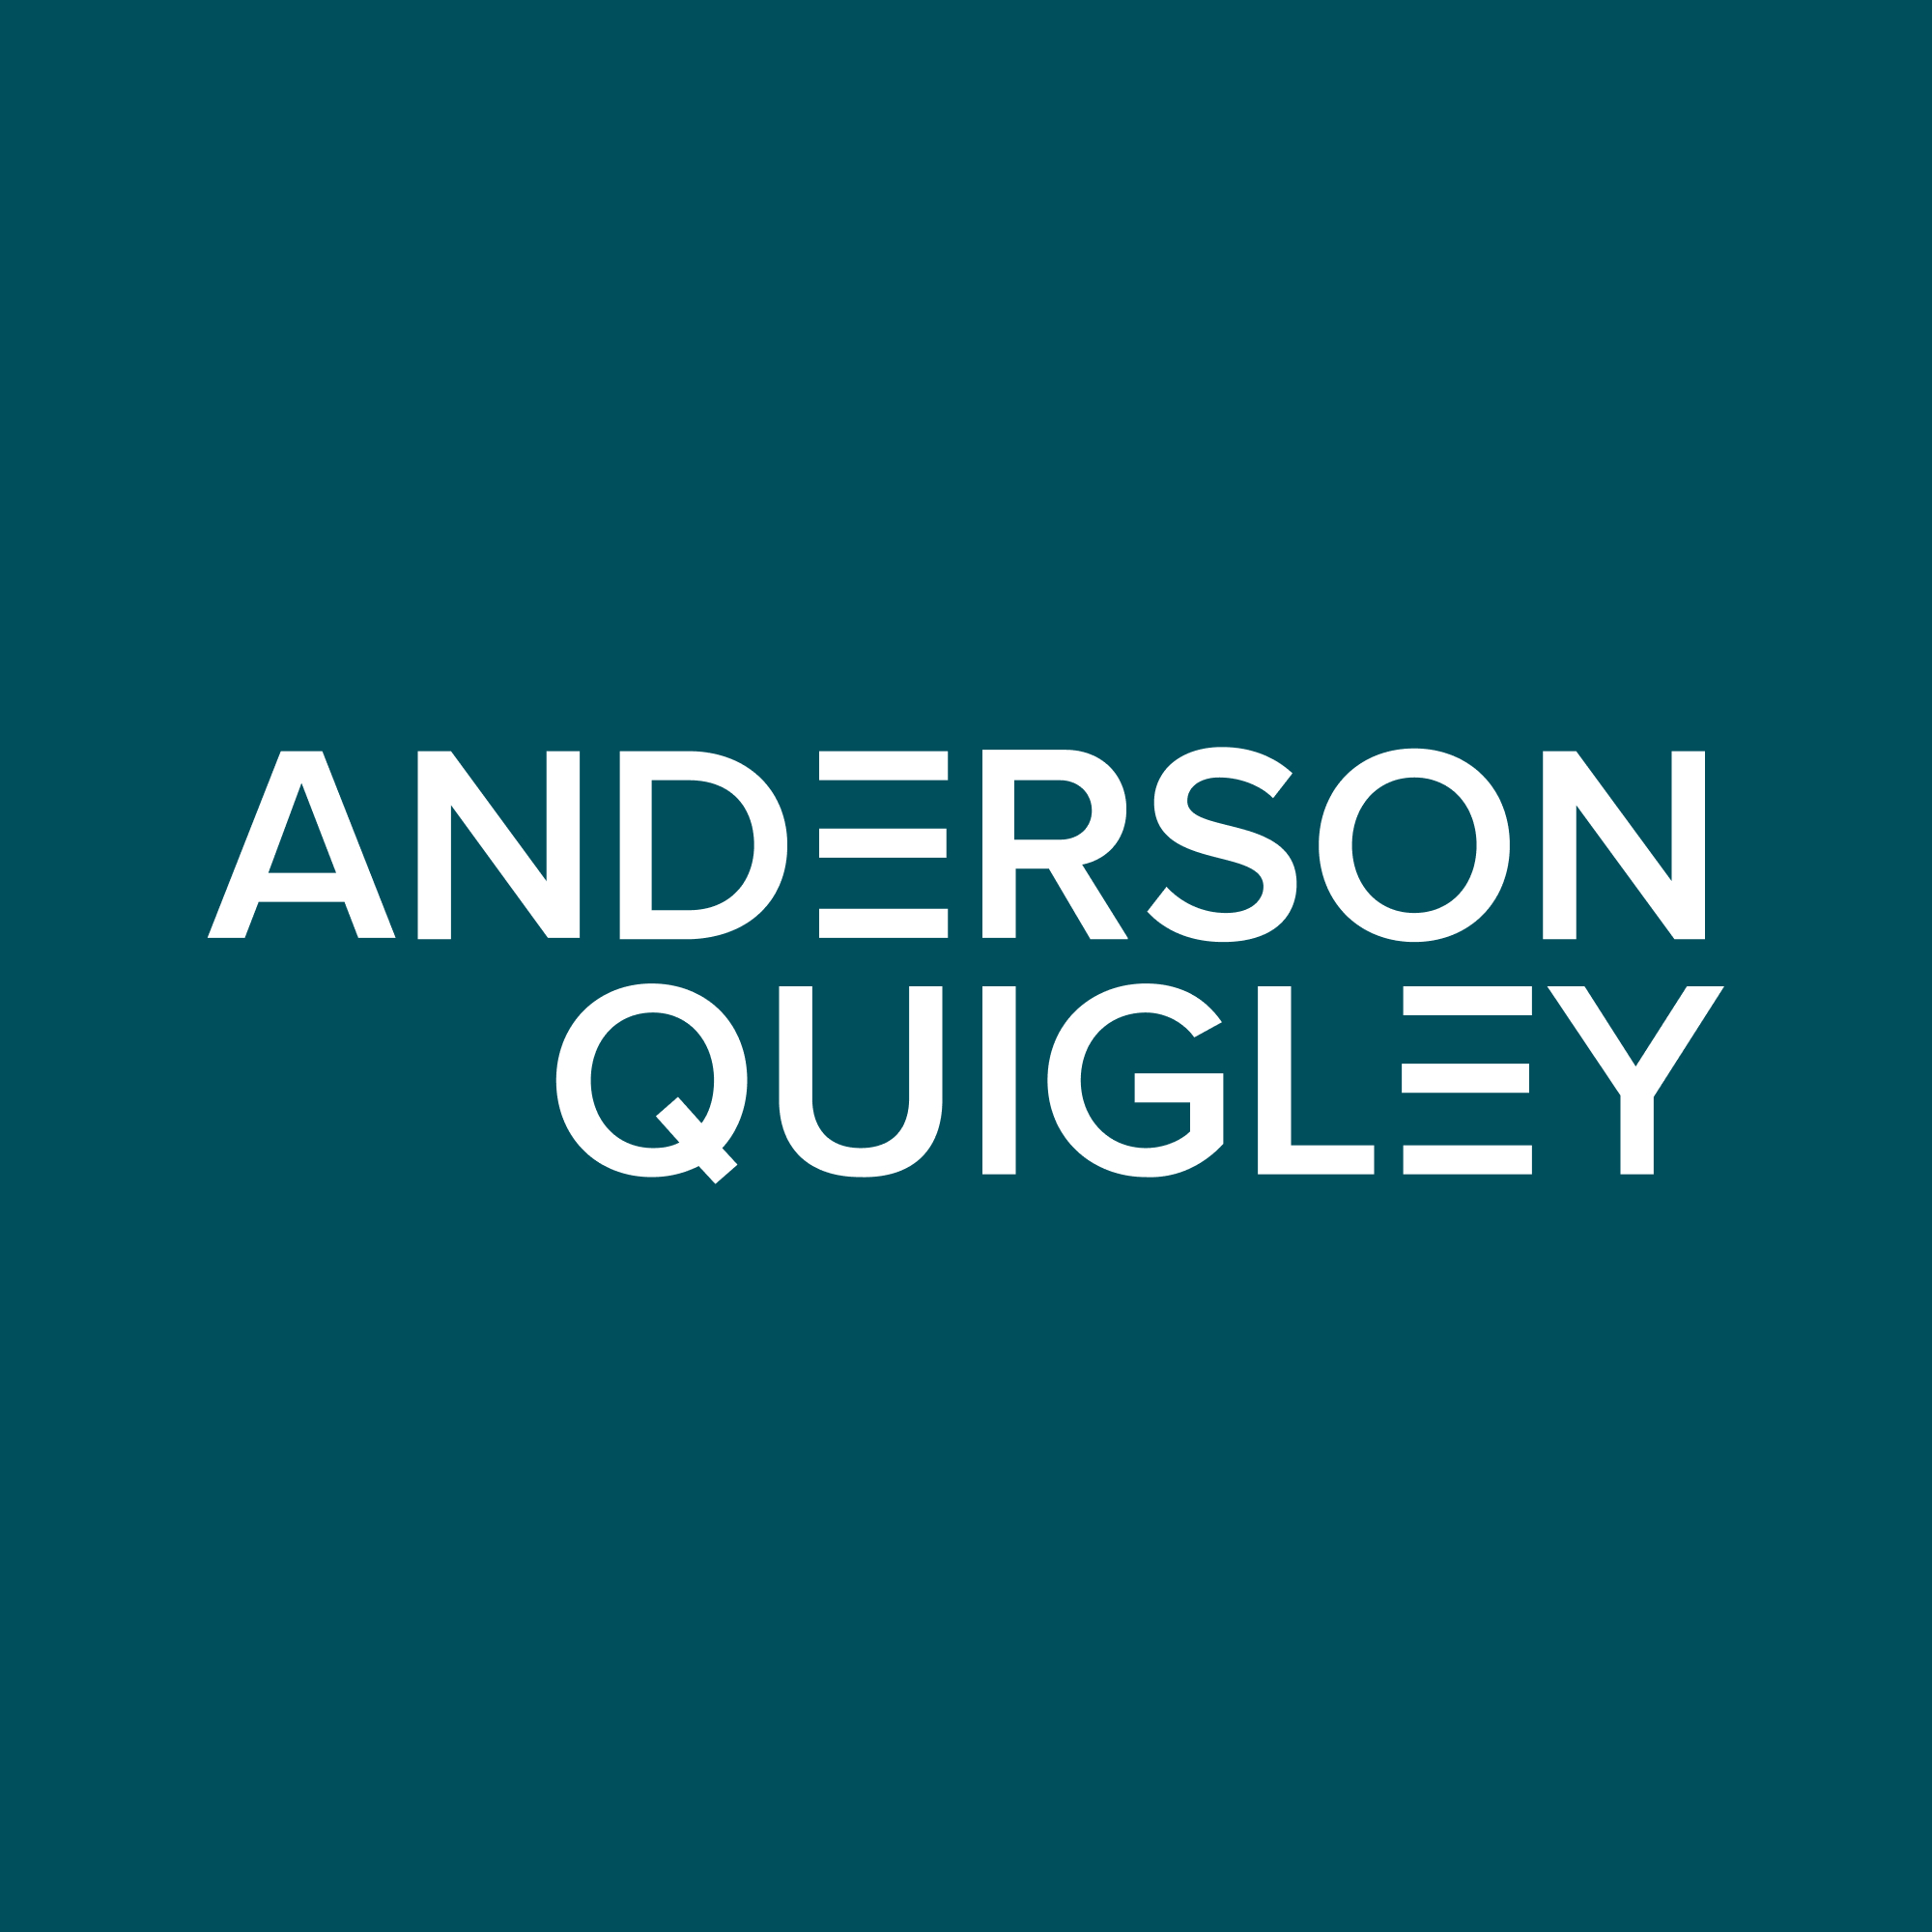 Anderson Quigley logo